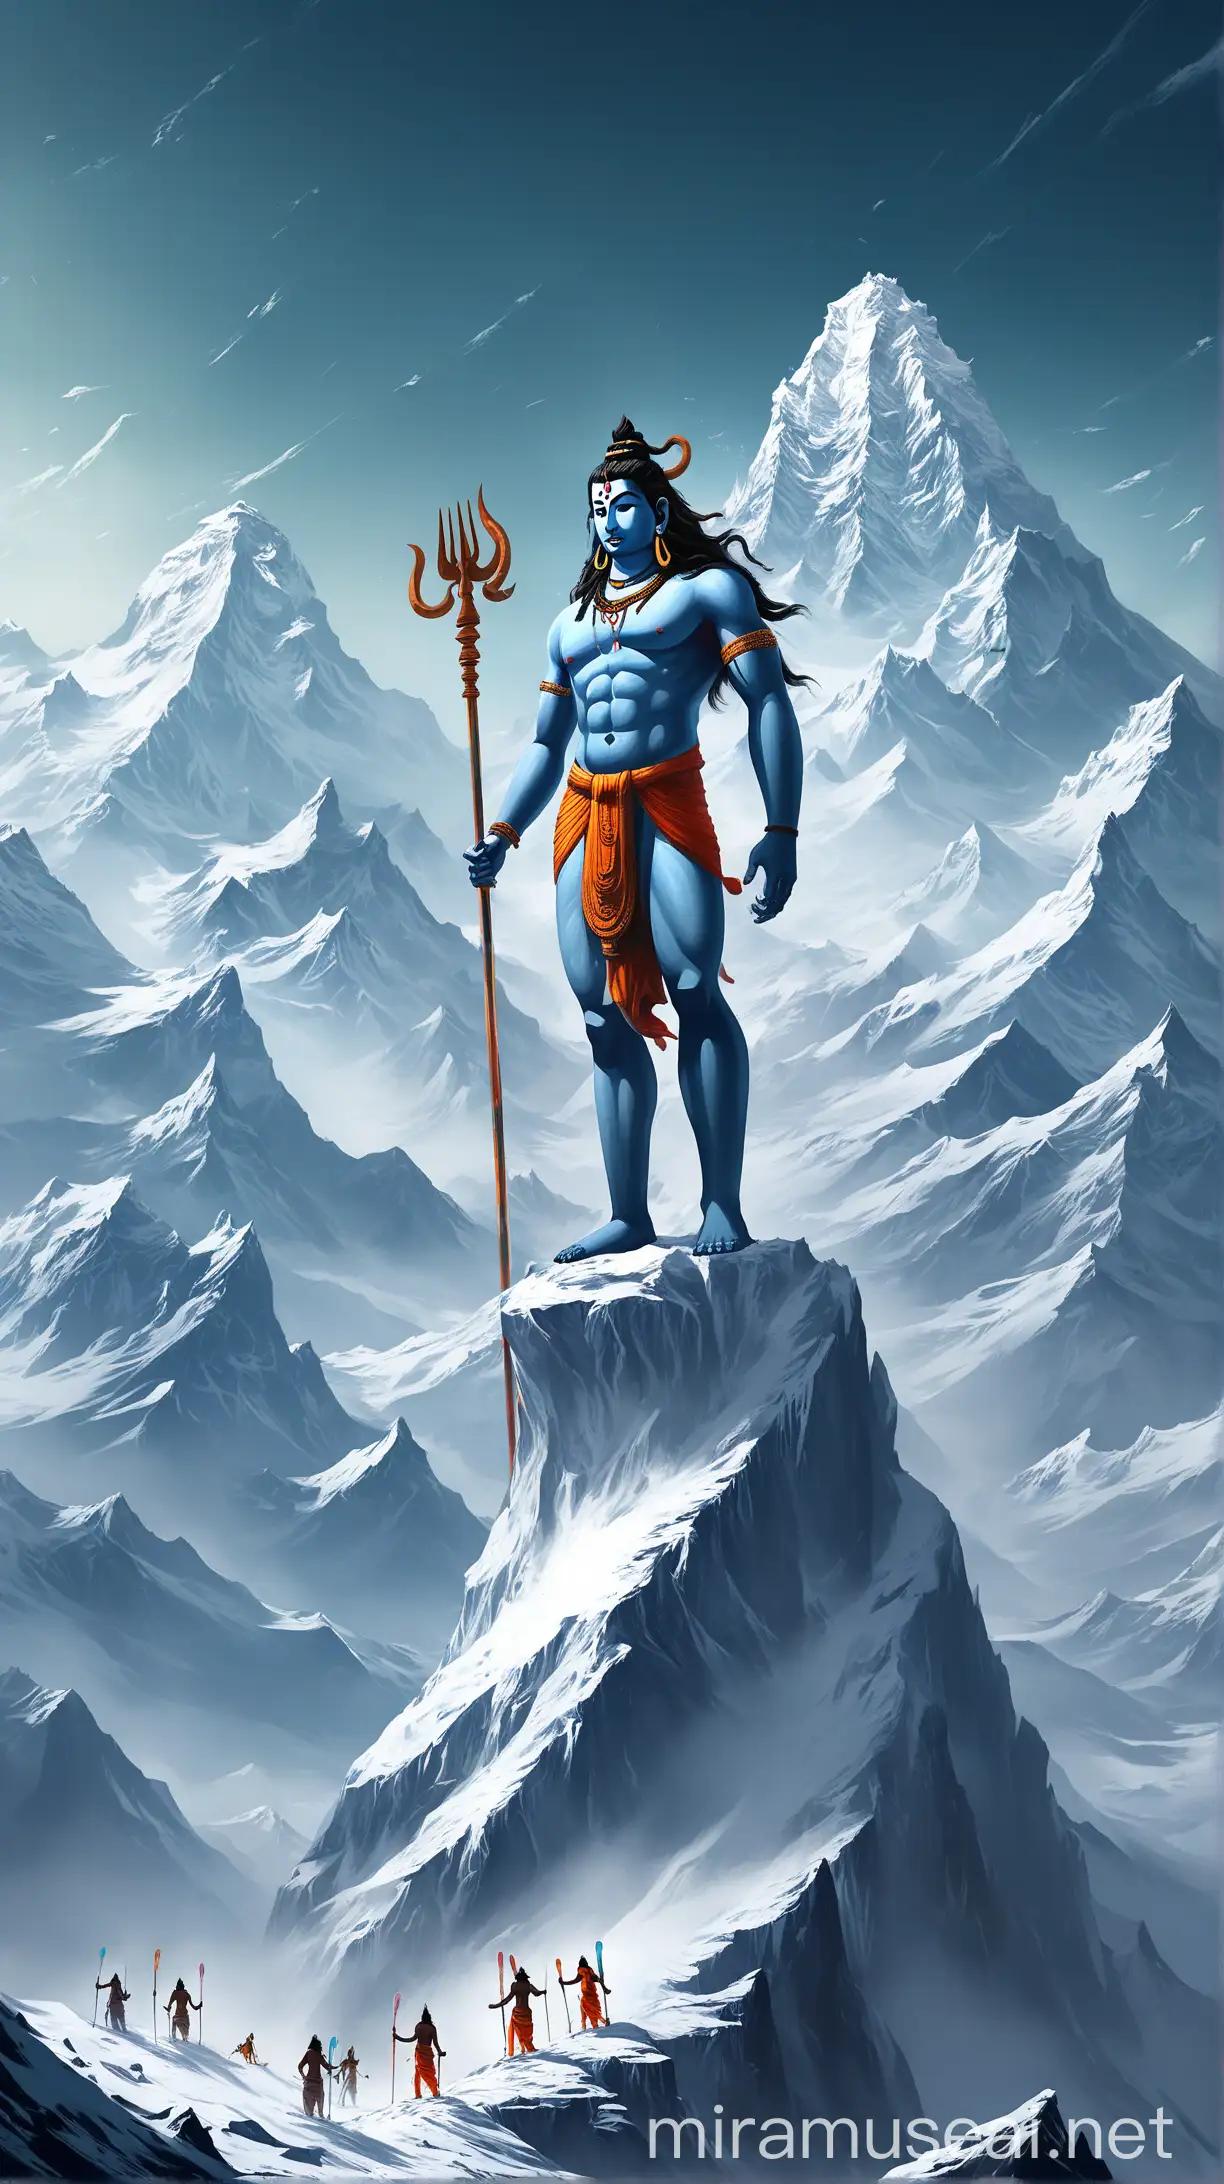 Majestic Lord Shiva Skiing on Himalayan Summit